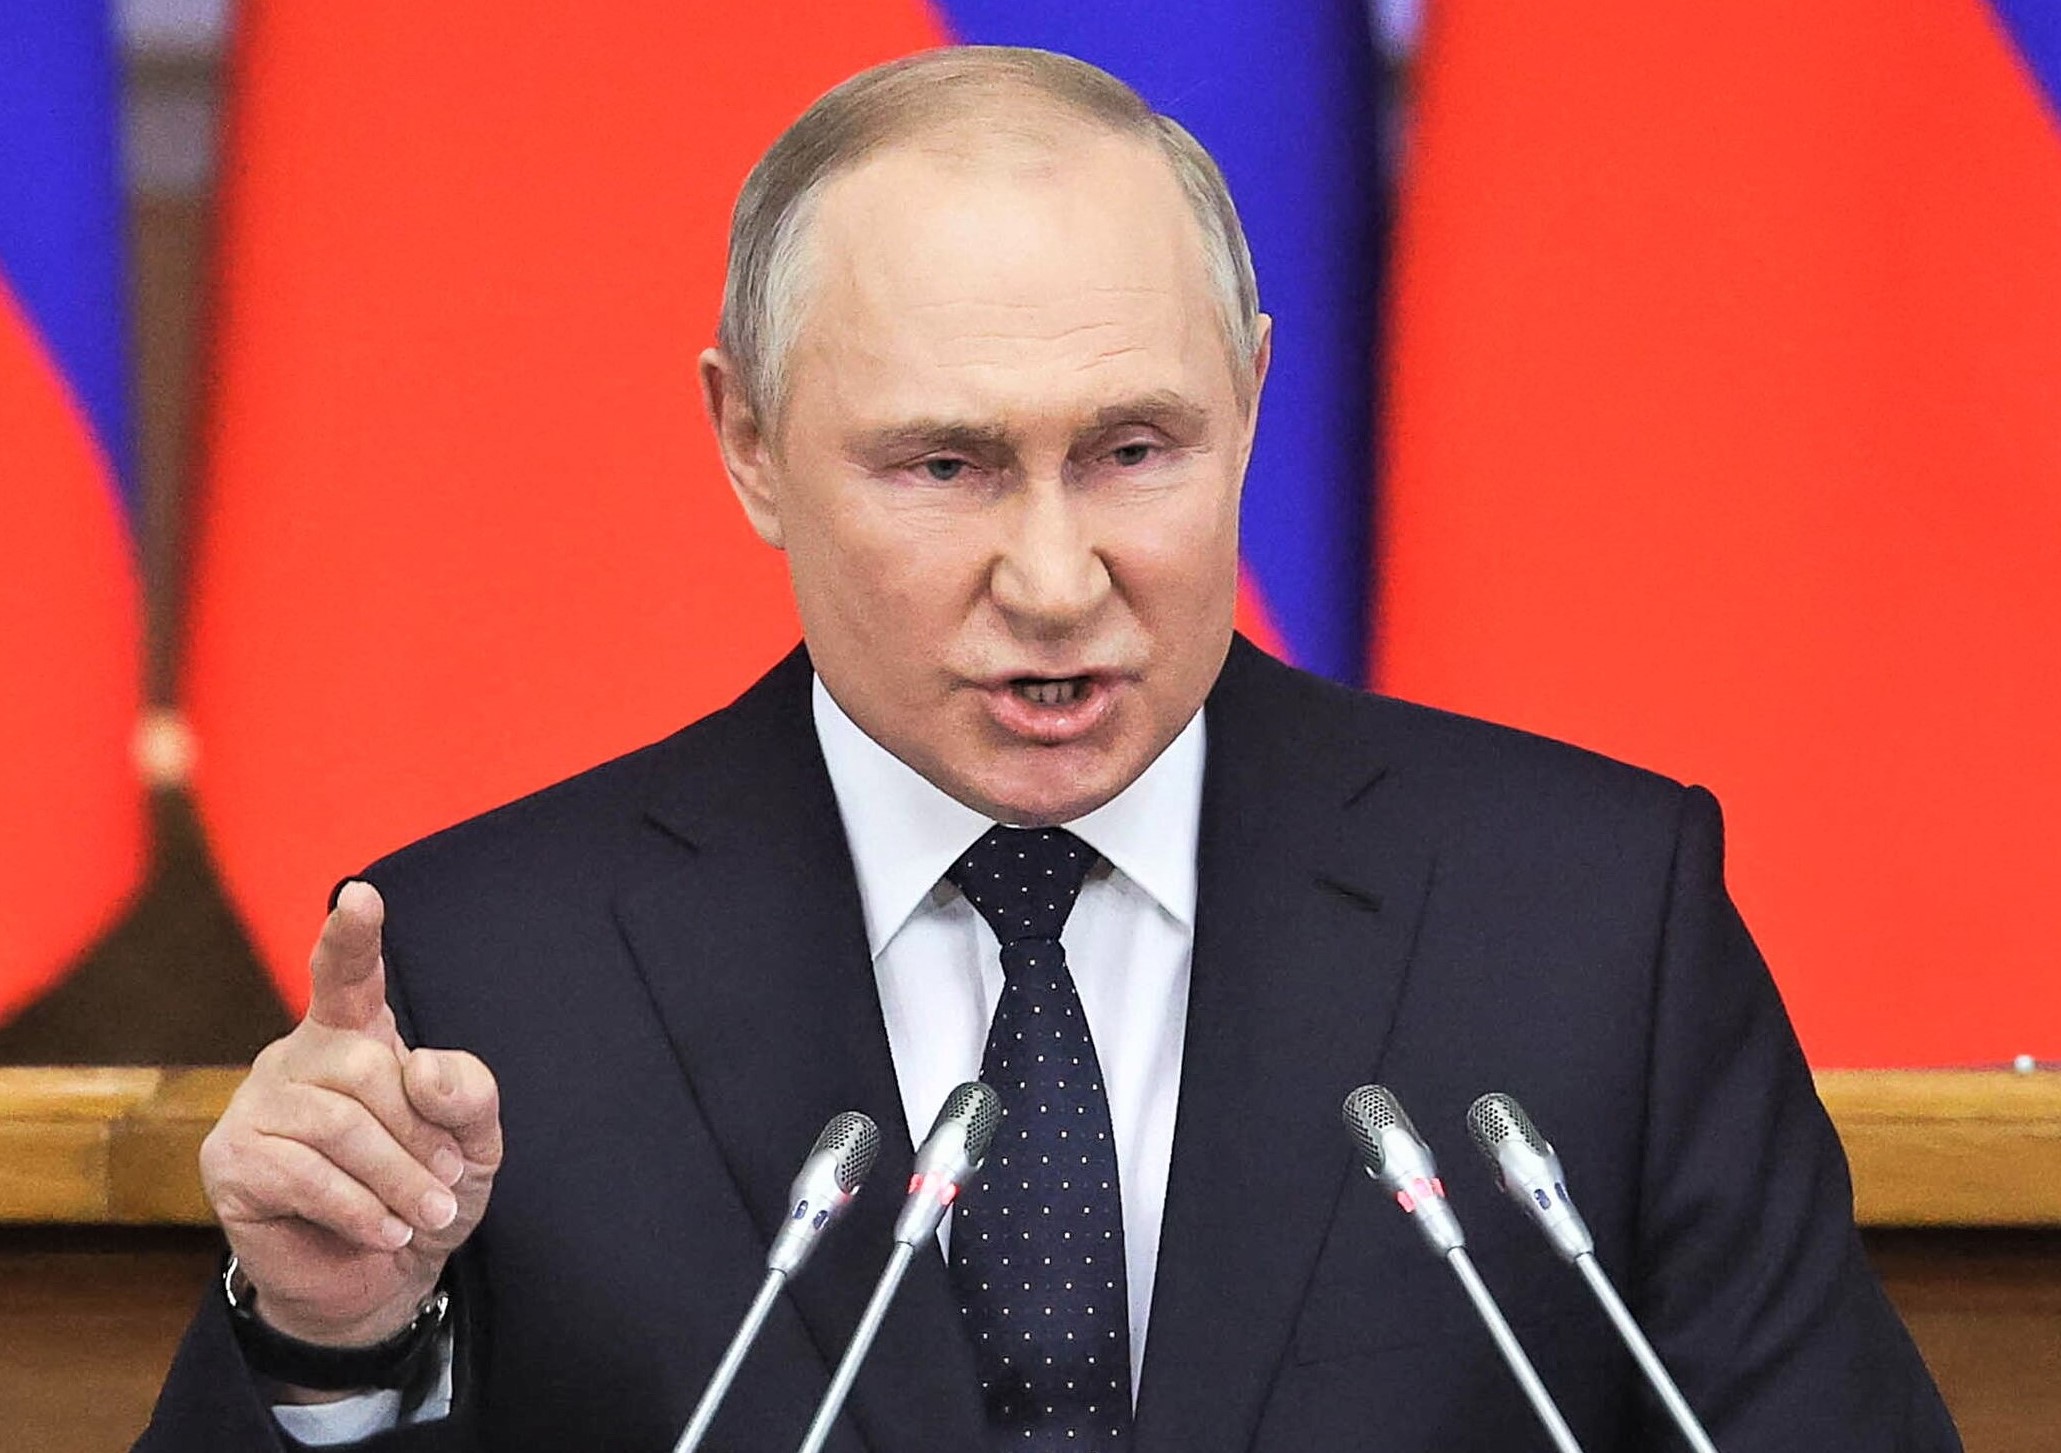 Putin tobt vor Wut: "Es gibt kein Zurück mehr!" Nach drastischen Entscheidungen beim G7-Gipfel reagiert der Kreml massiv